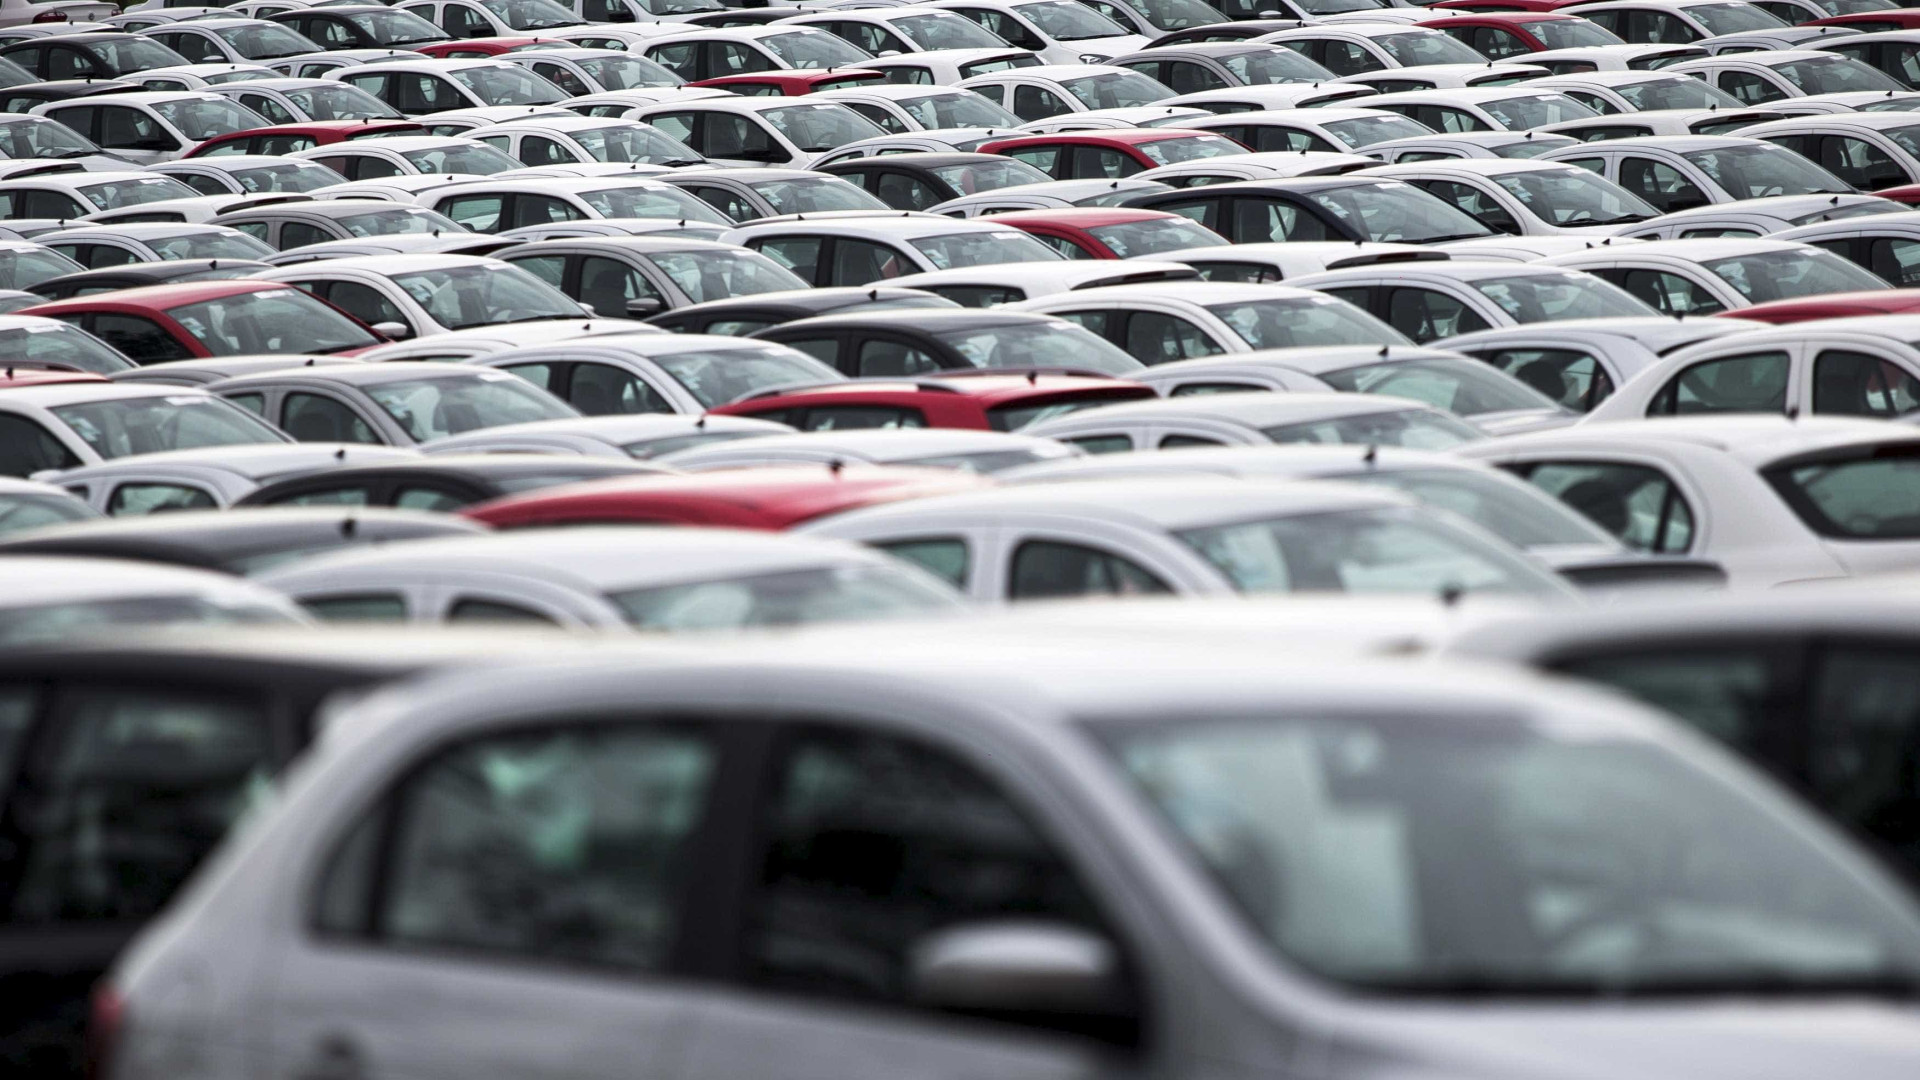 Faturamento com locação nacional
de veículos cai 9,5% em 2016